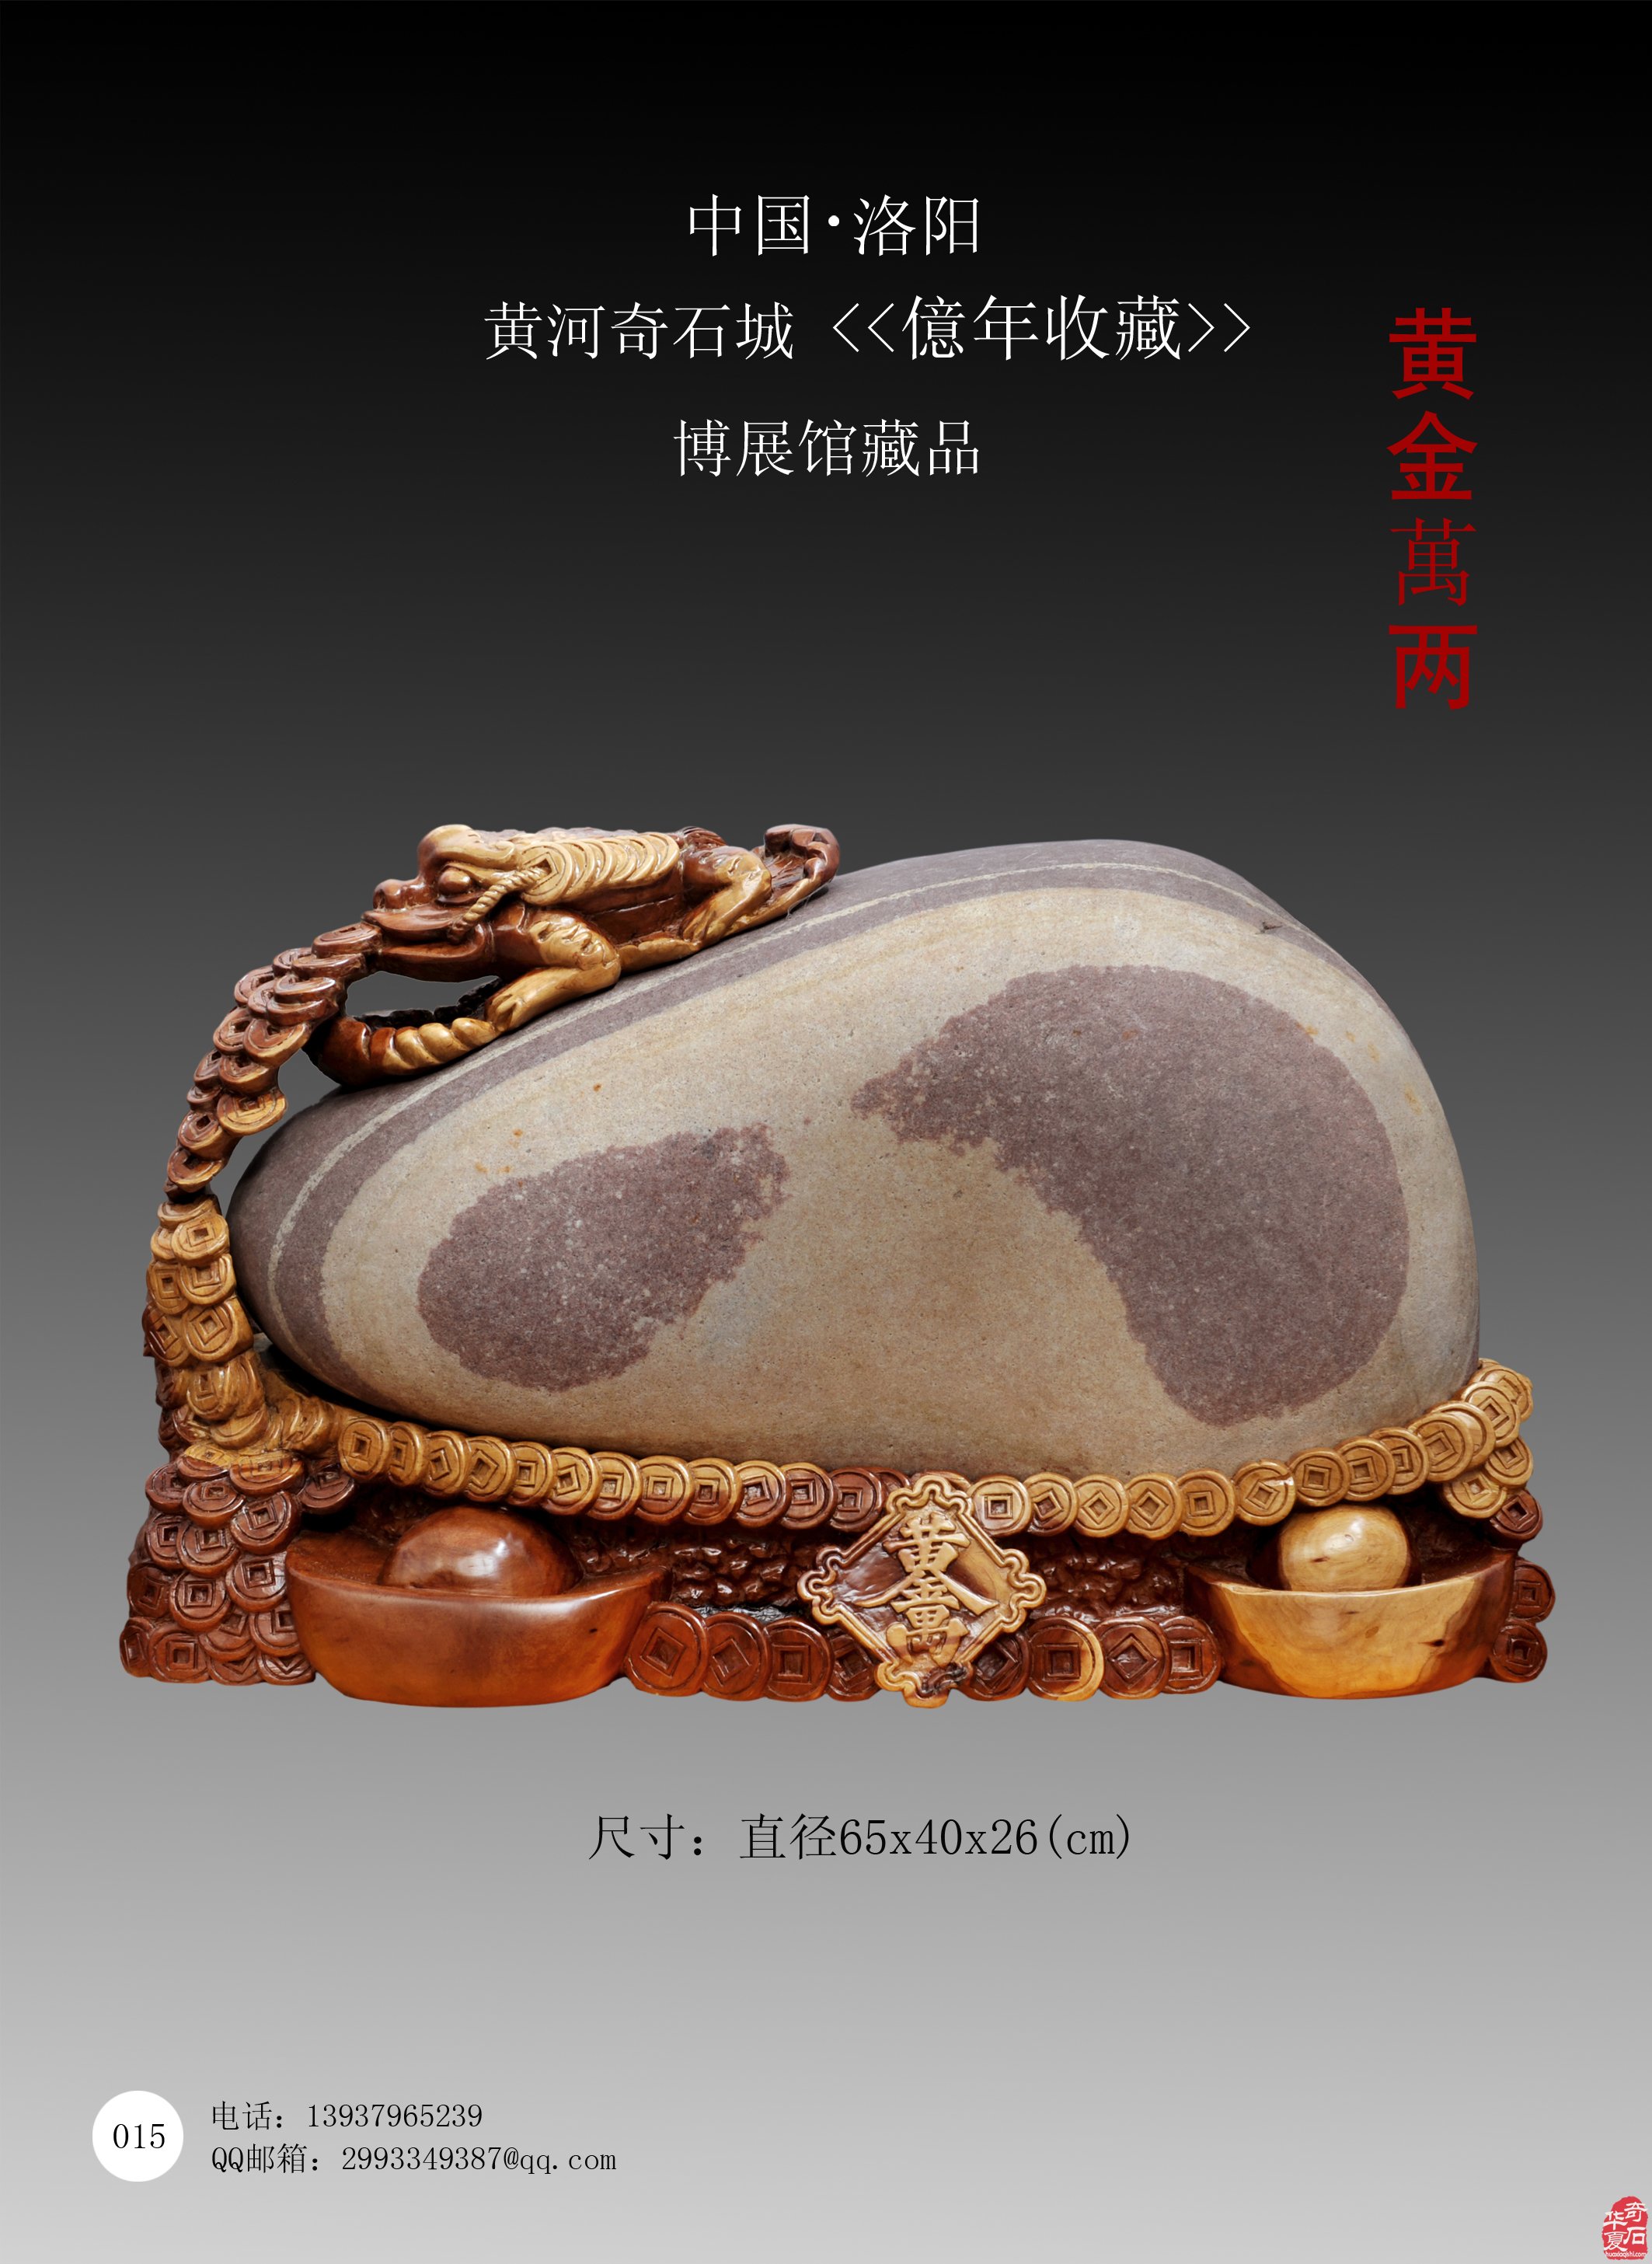 关于“中国洛阳第三十一届国际赏石文化艺术展暨 交易会”延期举办的公告